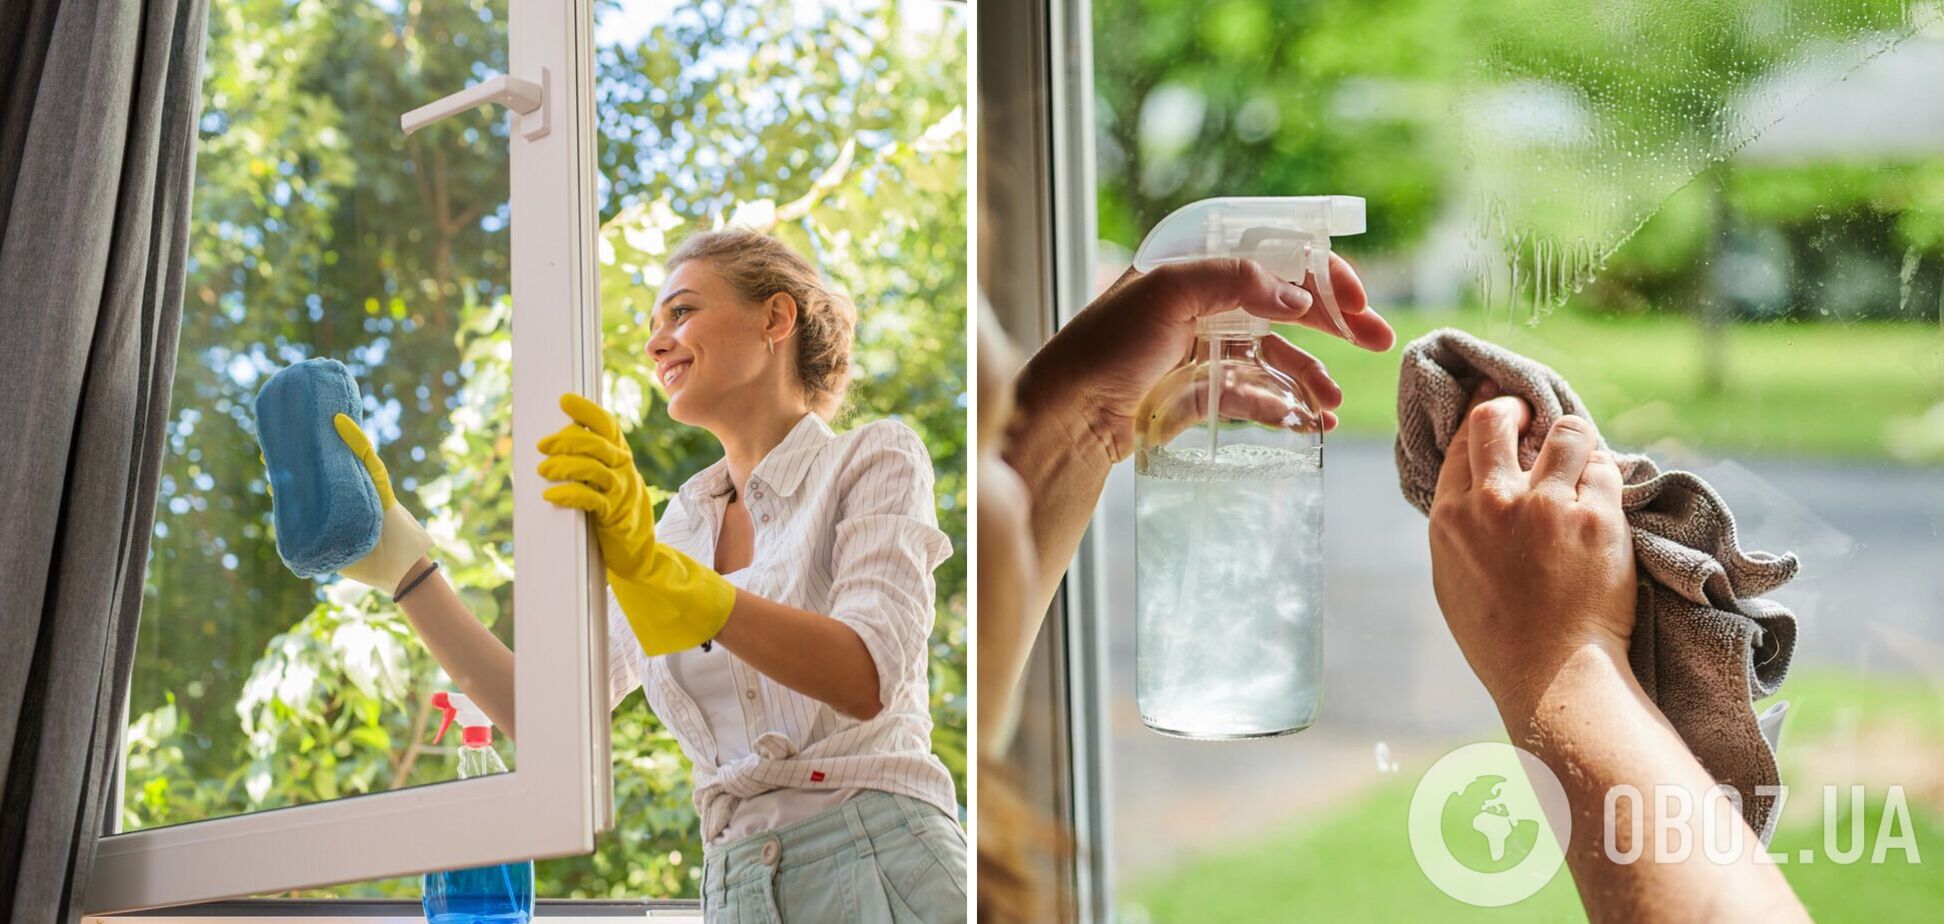 Окна будут идеально чистыми и прозрачными: французский способ мытья